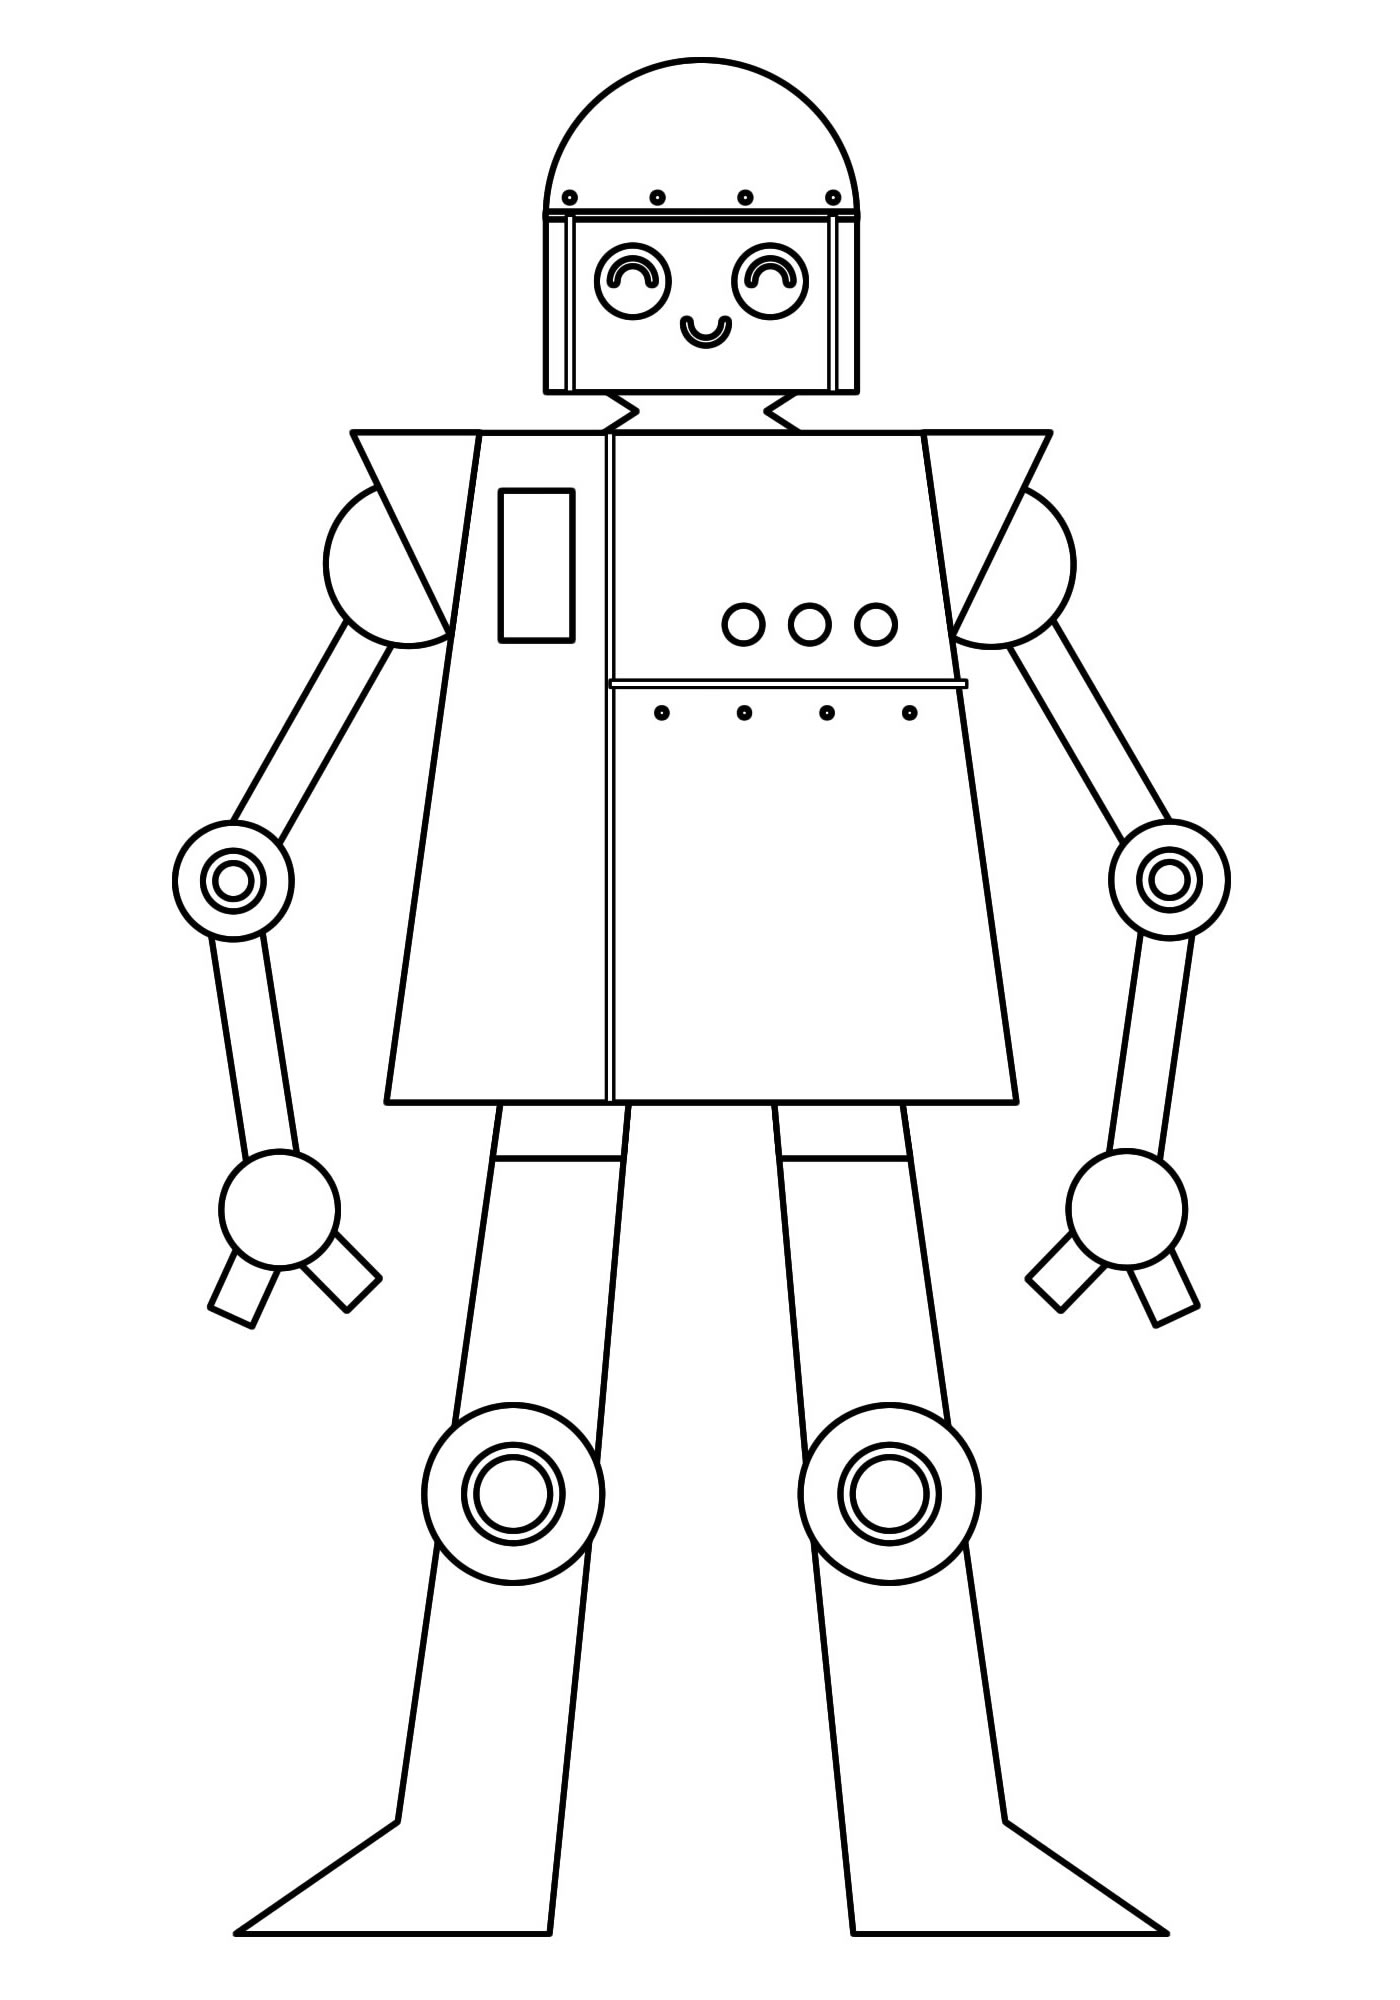 Раскраски Роботы распечатать на А4 бесплатно